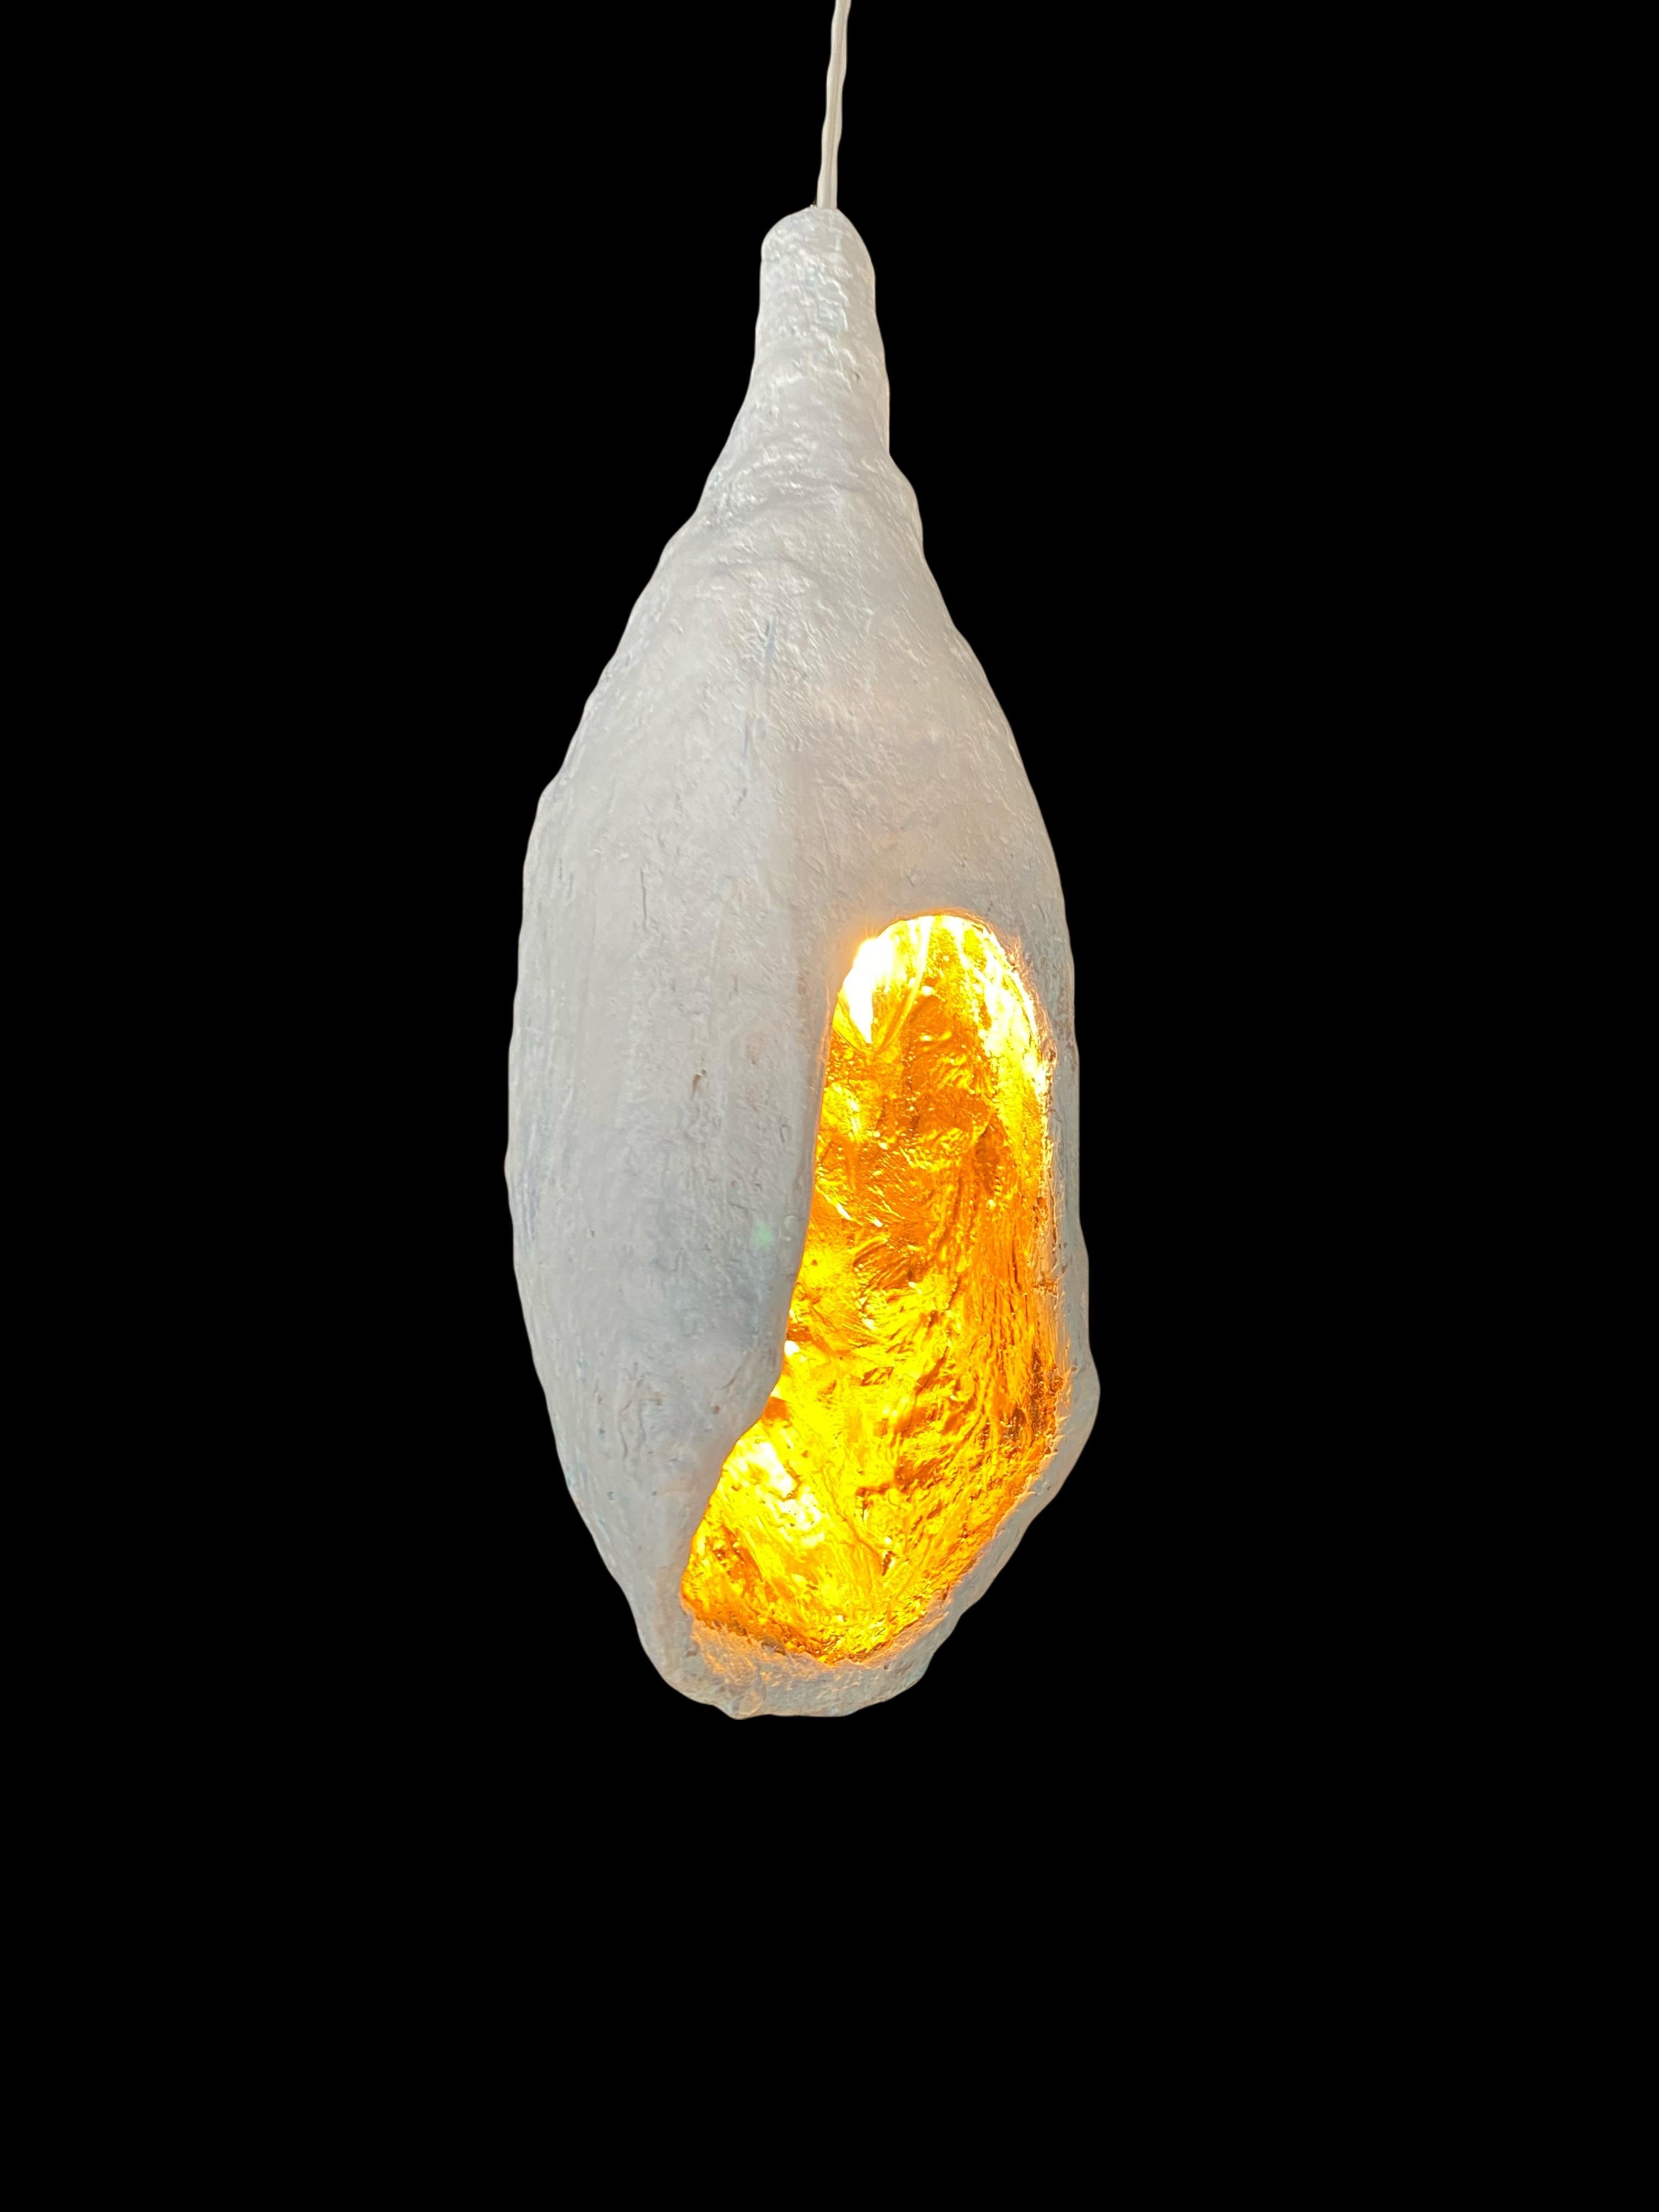 Dies ist ein neues Werk von Mattia Biagi in Gips 
Die skulpturale Lampe kann als Tisch- oder Hängelampe verwendet werden.